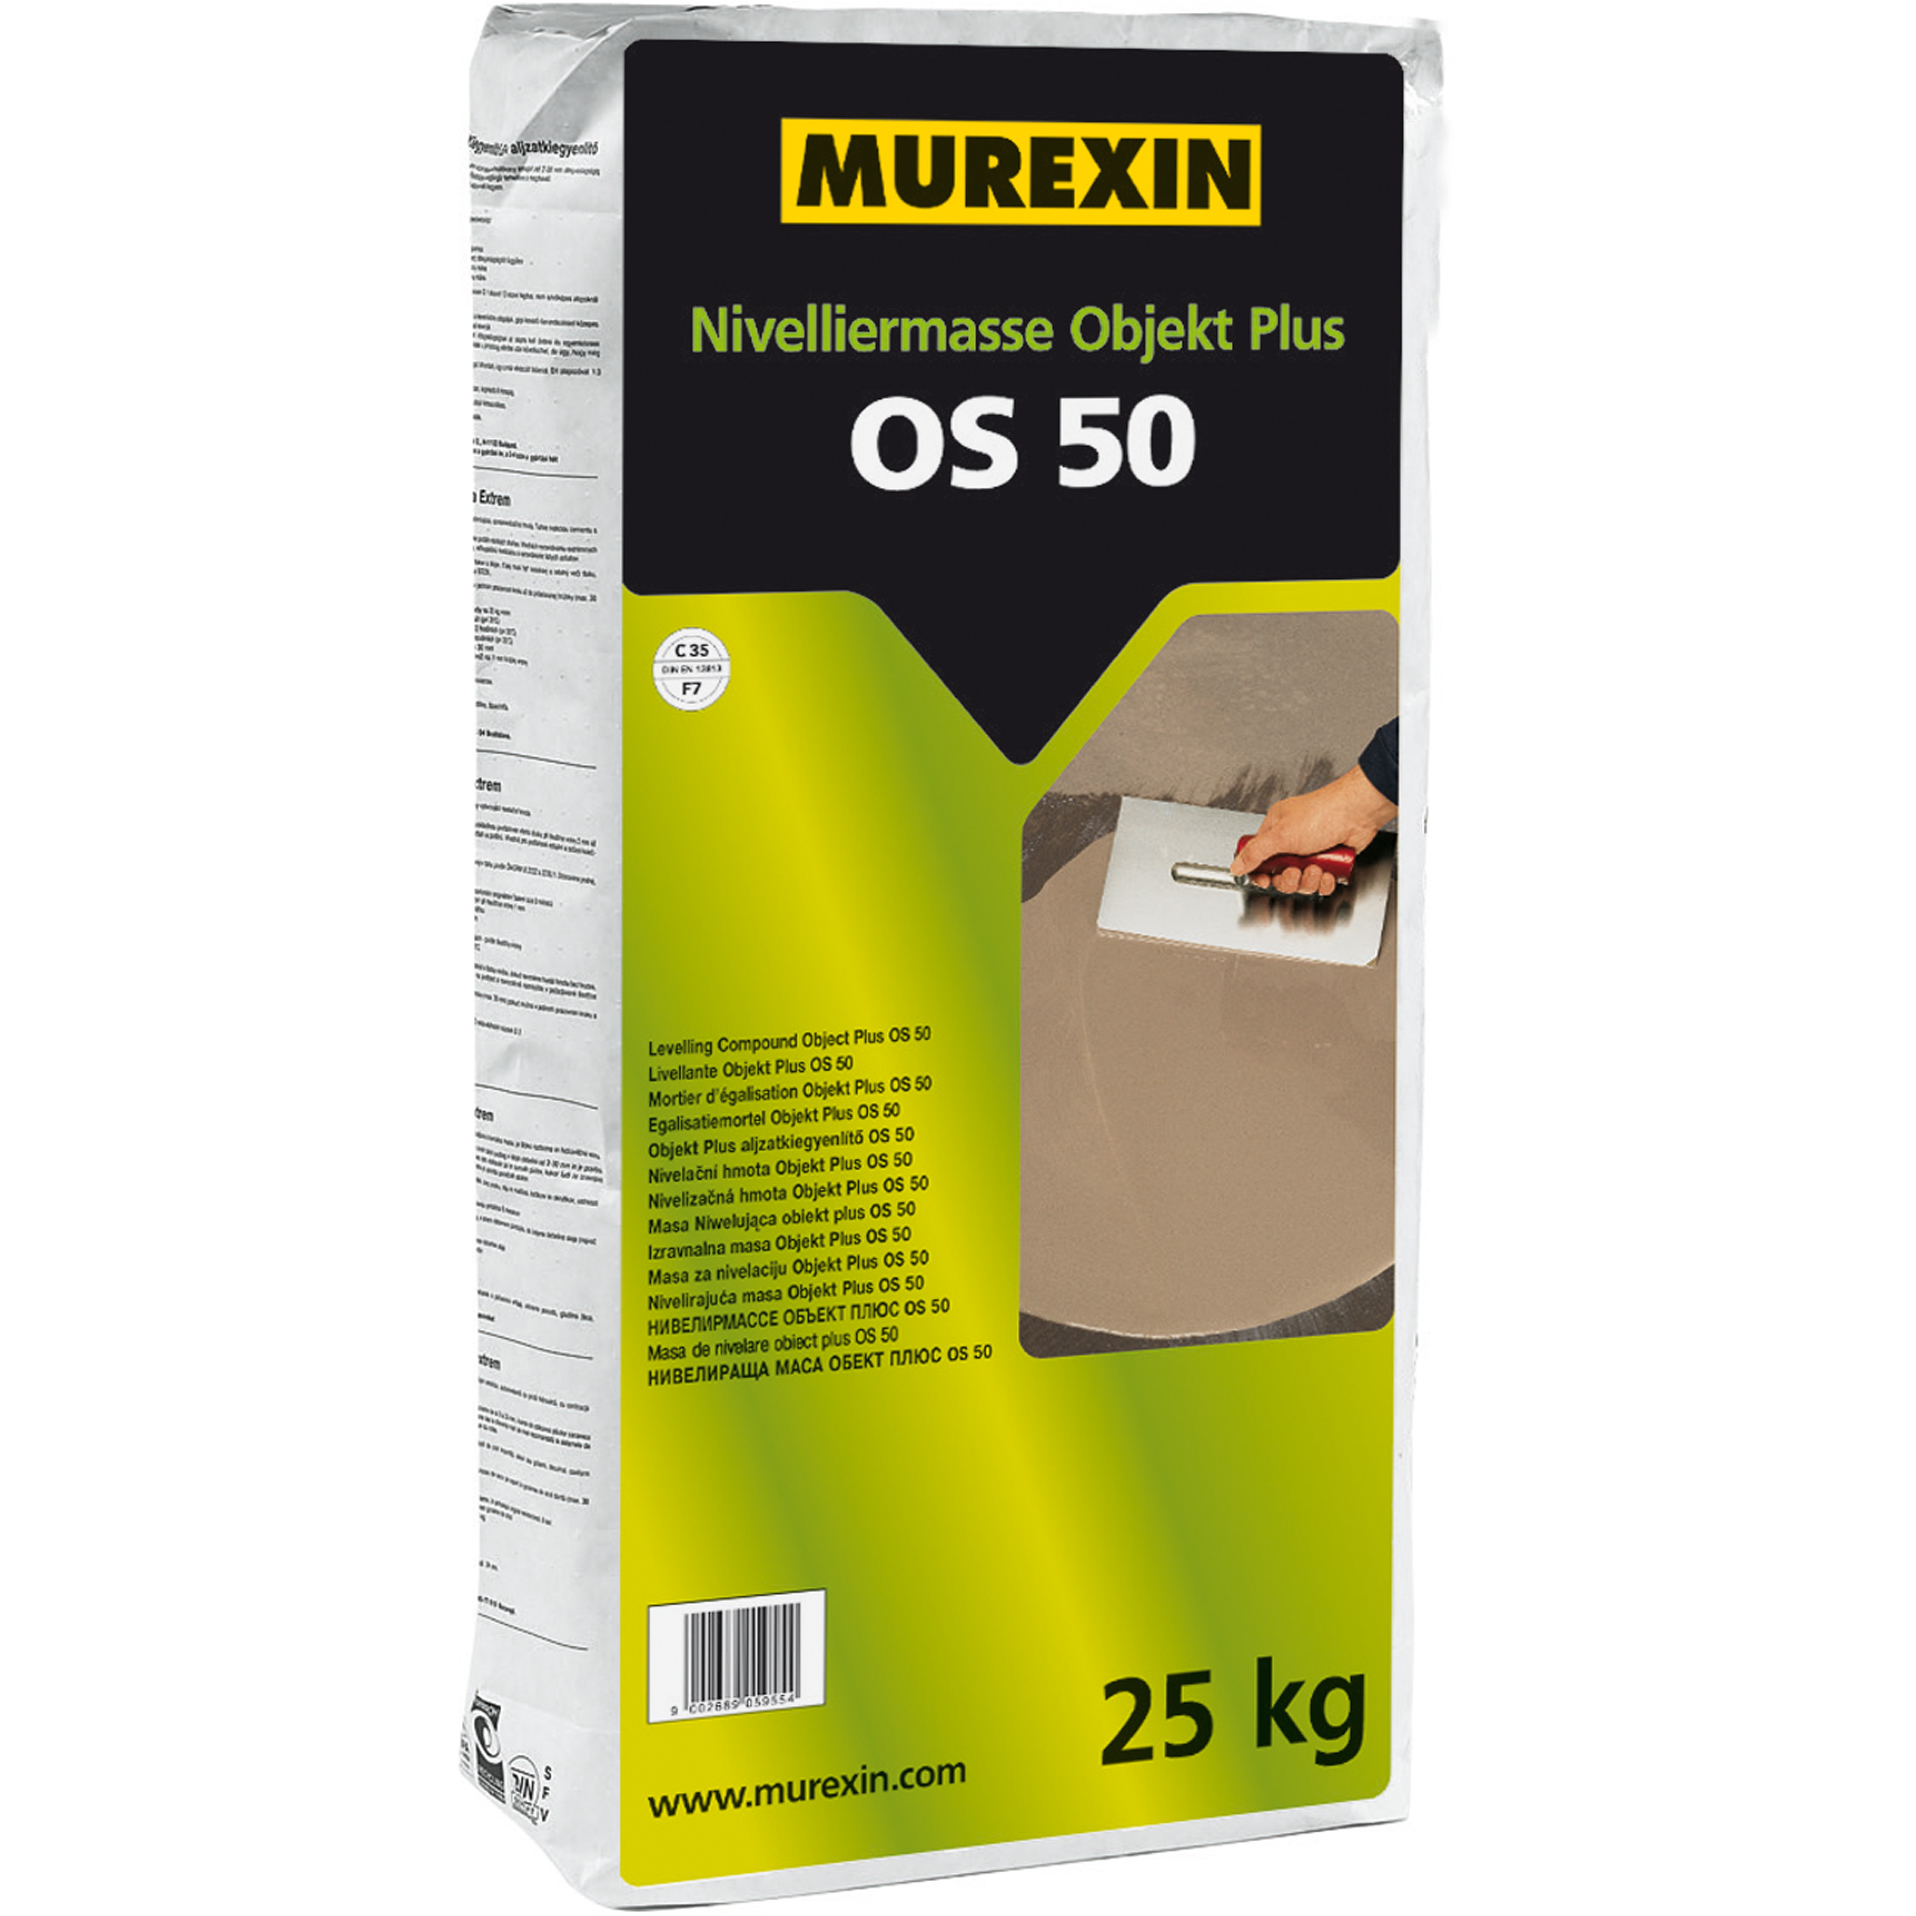 Murexin OS 50 Objekt Plus önterülő aljzatkiegyenlítő